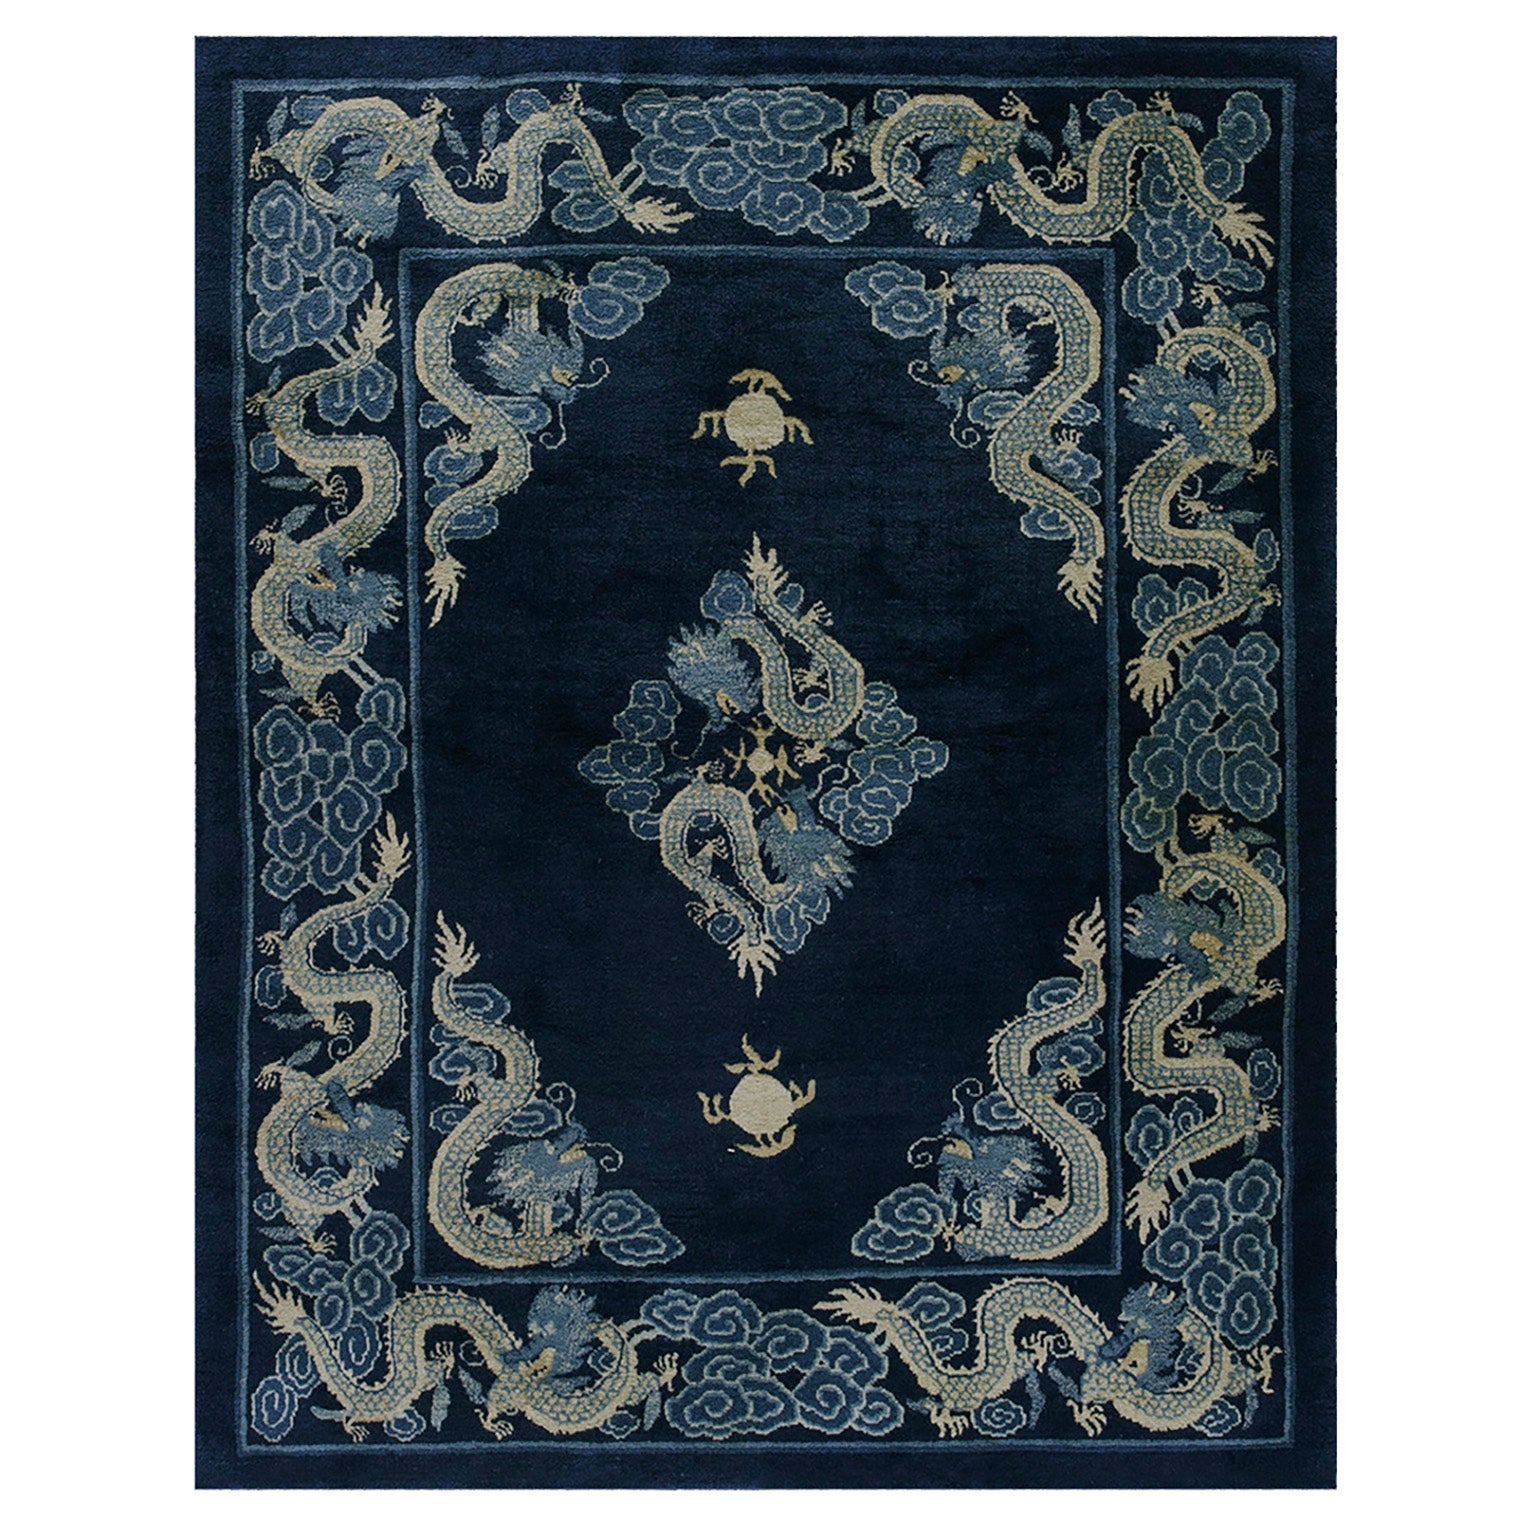 Chinesischer Drachenteppich aus dem frühen 20. Jahrhundert ( 4'8" x 5'10" - 142 x 178 )